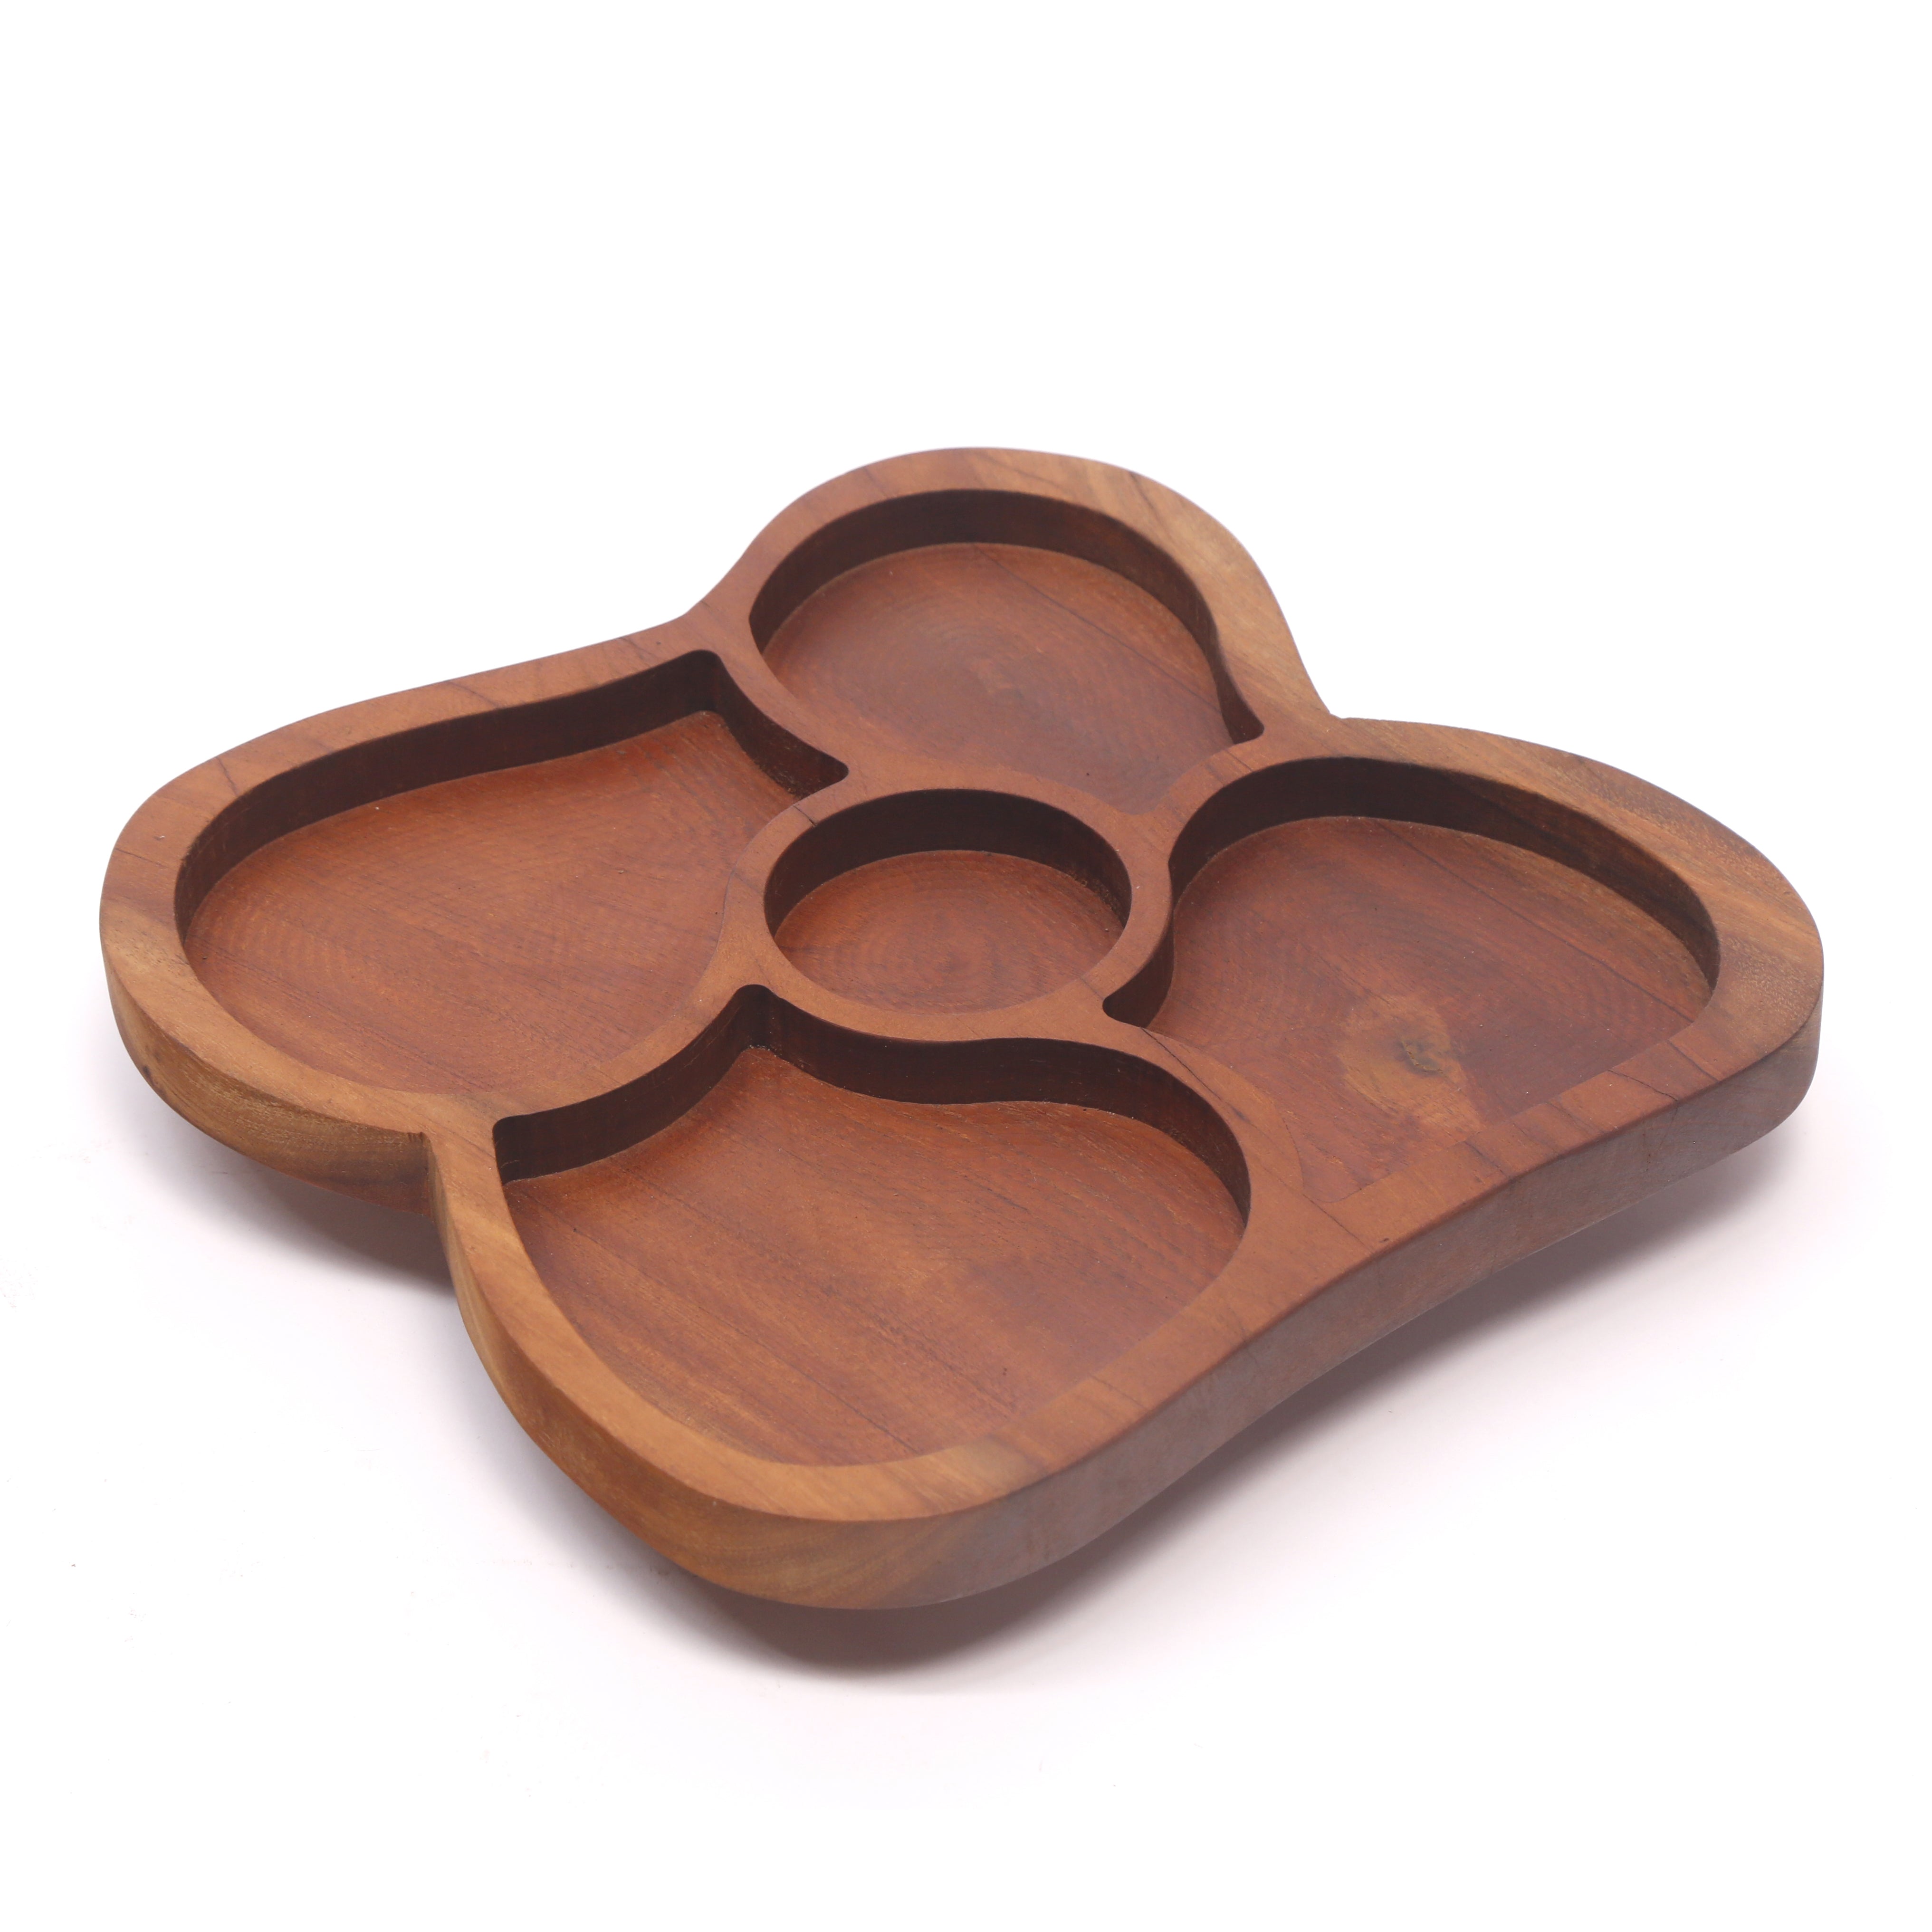 Melding Circles Wooden Platter Platter